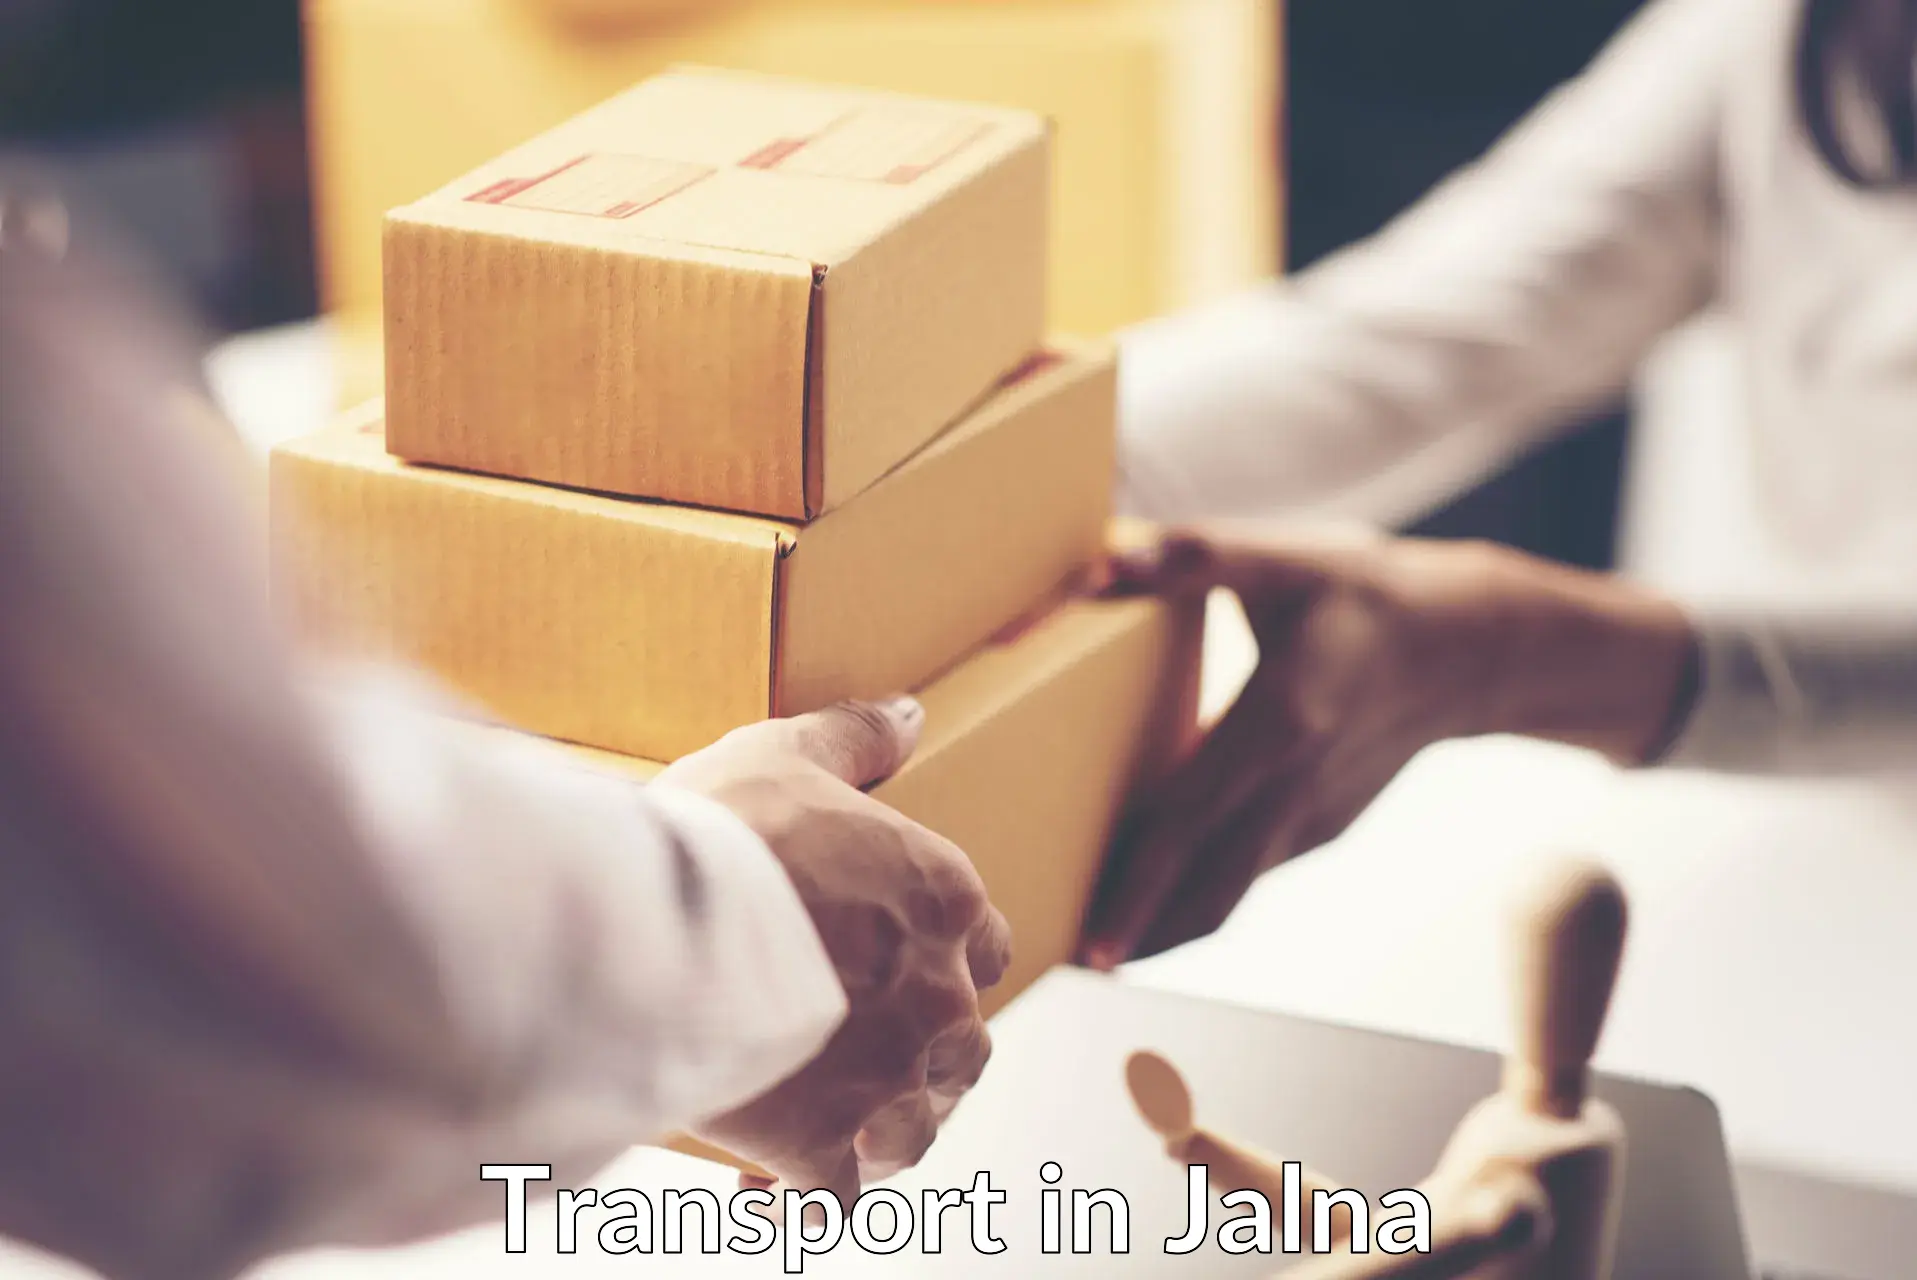 Land transport services in Jalna